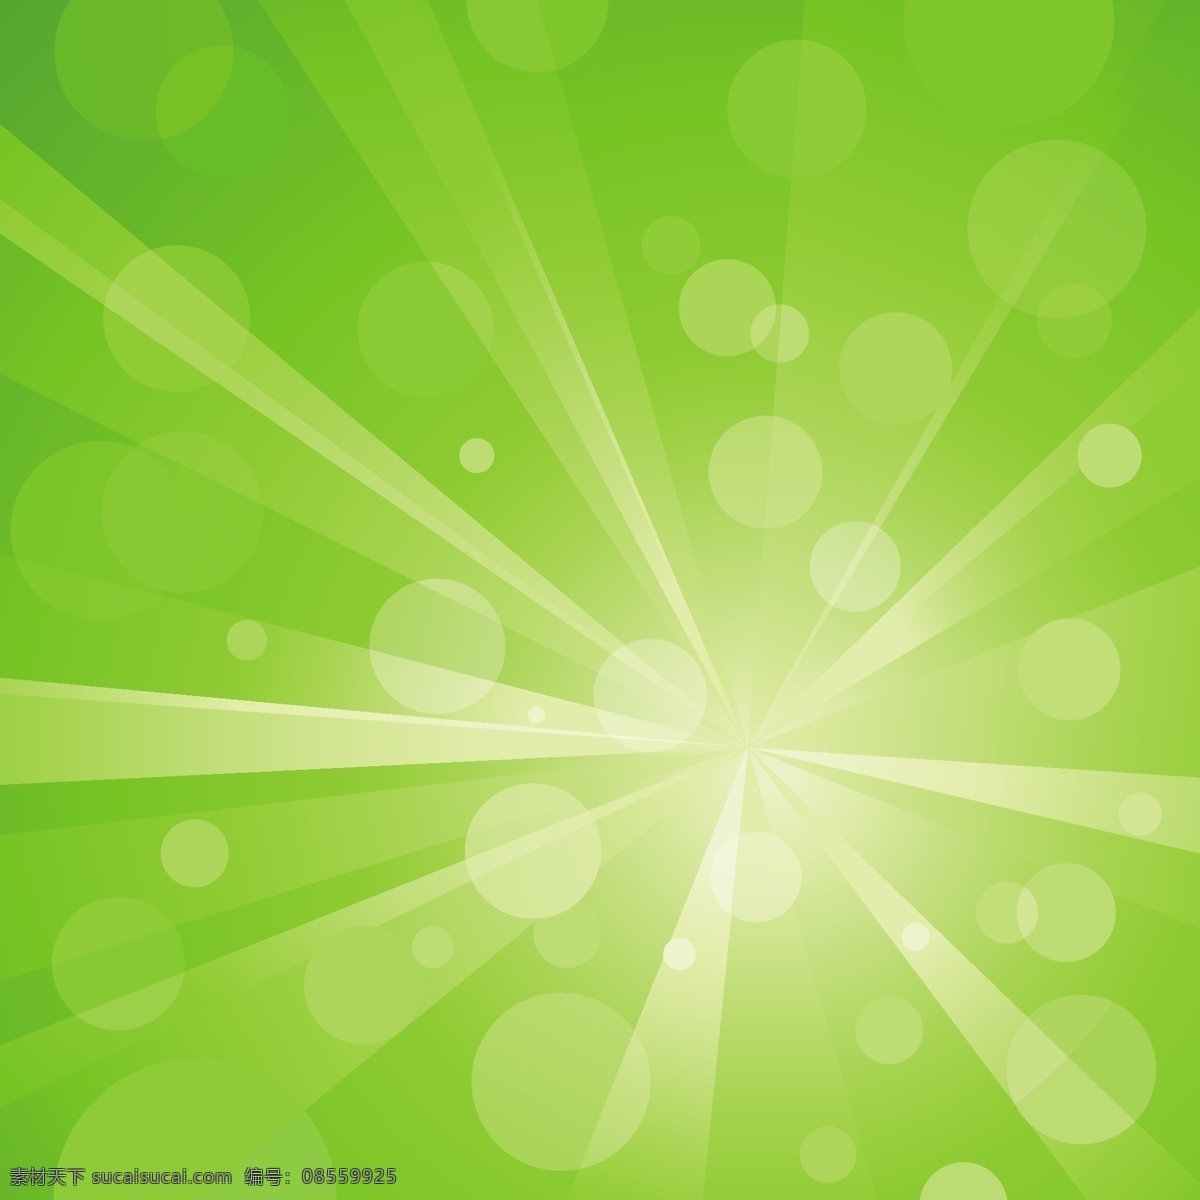 光线矢量素材 光线 绿色 光圈 矢量背景 广告背景